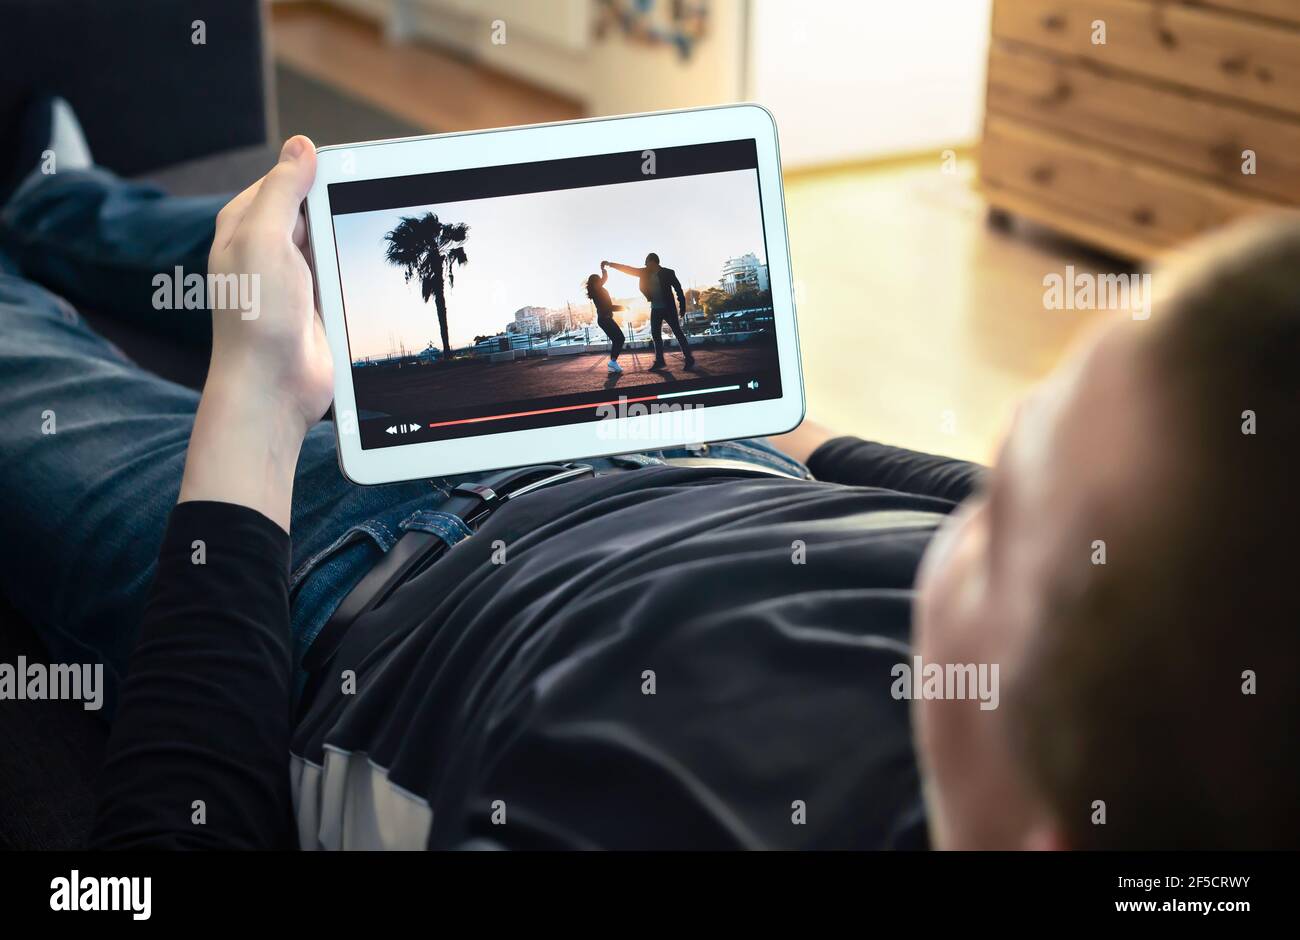 Ansehen von VOD-Diensten und Online-Filmstreams. Filmstreaming, fernsehserien oder Musikvideos auf Abruf auf dem Bildschirm eines Smart-Geräts. Mann genießt Unterhaltung. Stockfoto